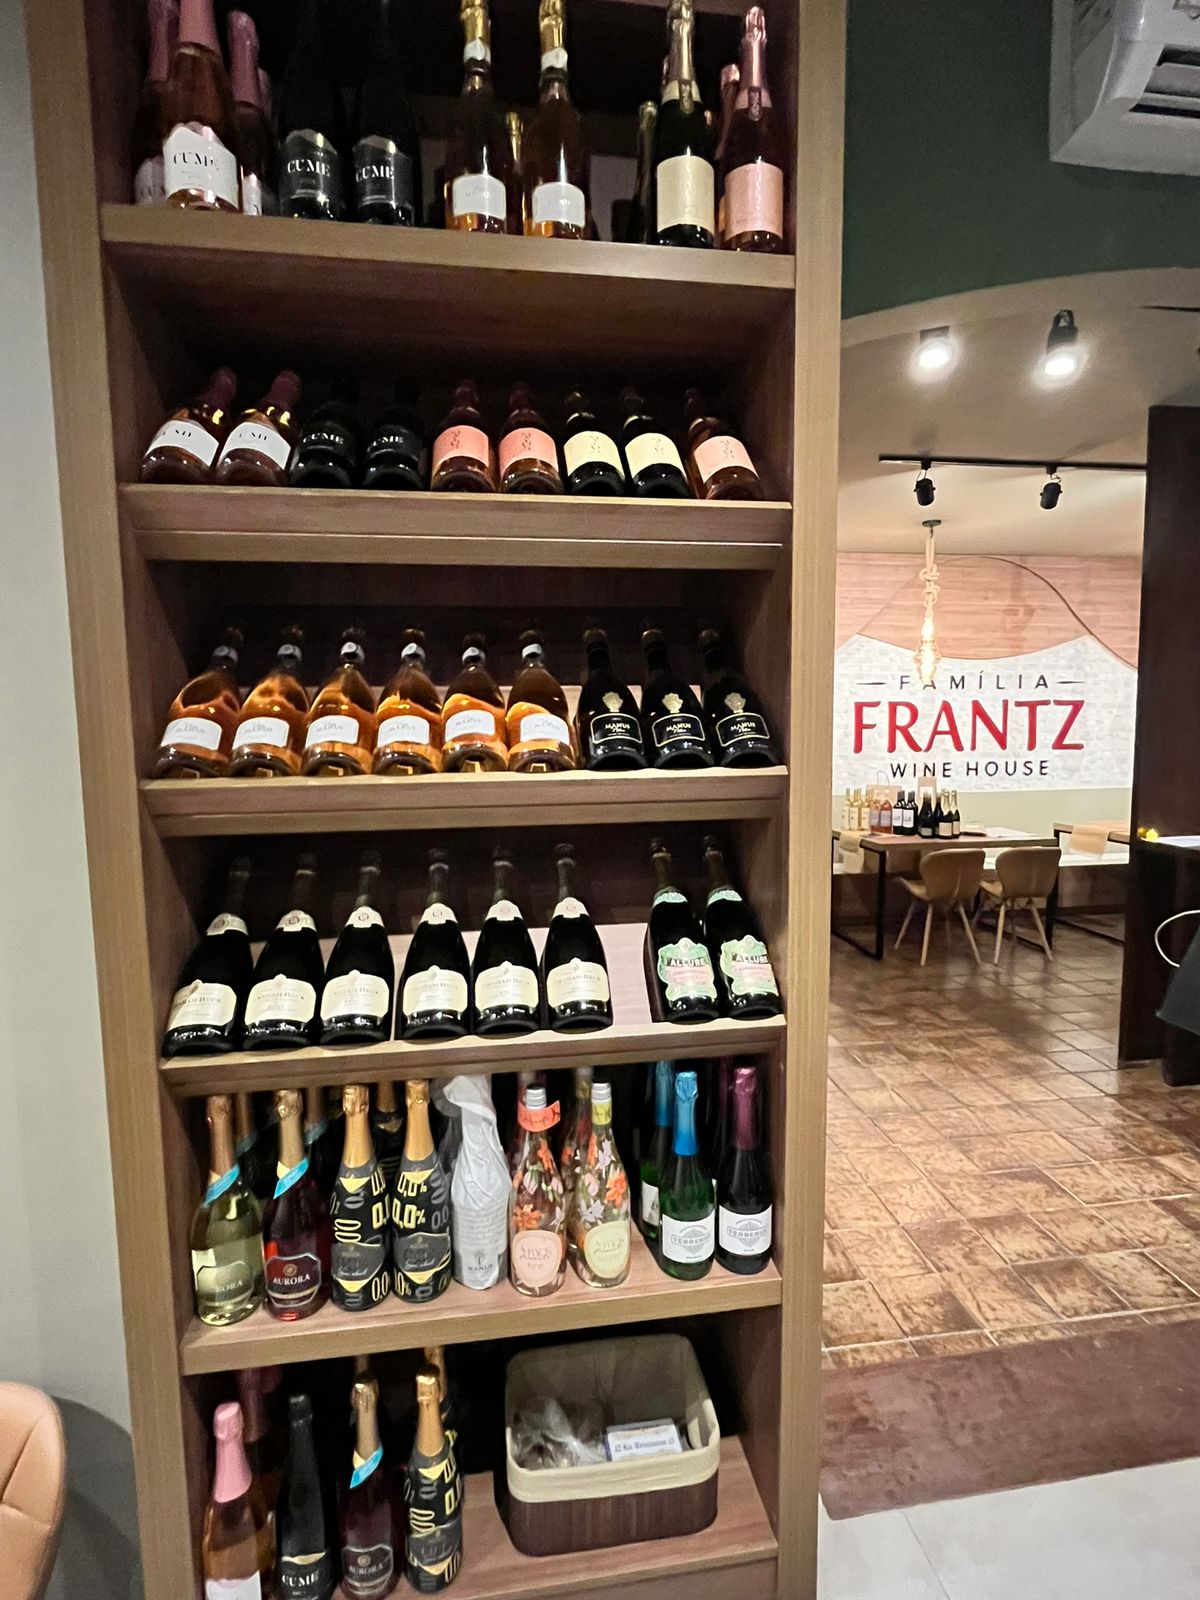 No momento você está vendo Família Frantz inaugura aconchegante casa de vinho no espaço mais badalado da Pituba